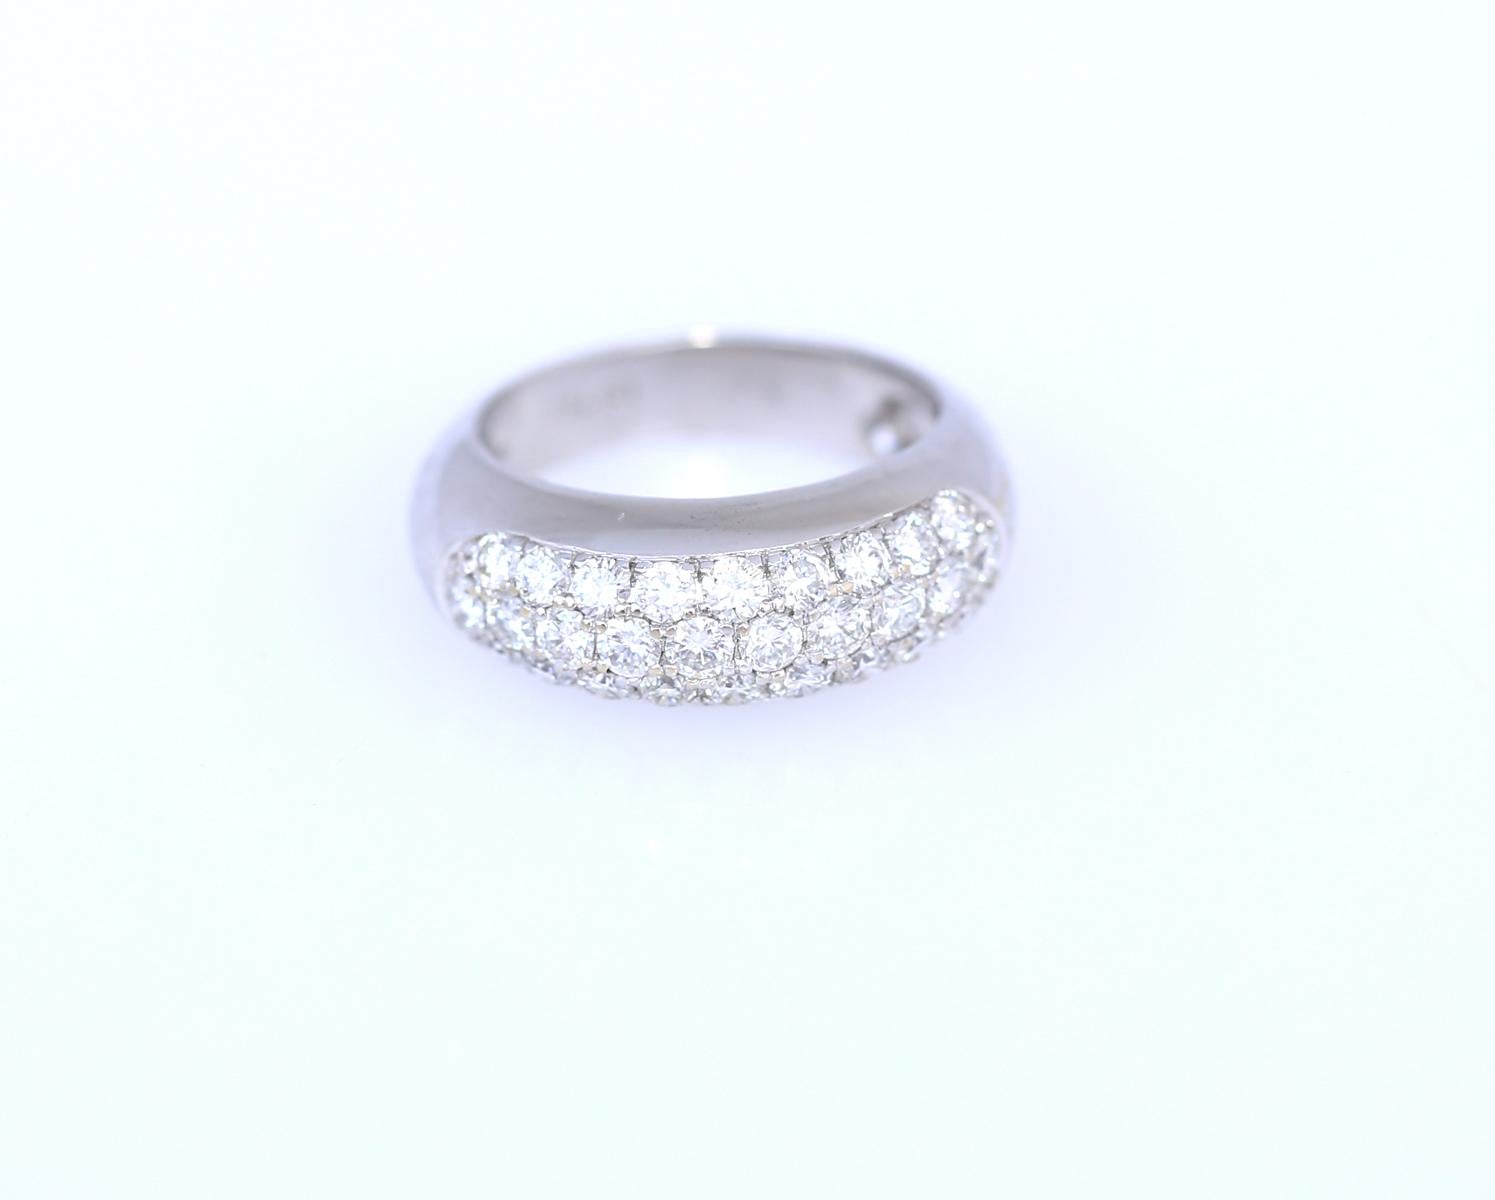 1.3 Karat feiner rundgeschliffener Diamanten in einem Ring aus 18 Karat Weißgold.

Das Design ist zeitlos klassisch. Reihen von feinen Diamanten sind nach oben gerichtet. Der Ring selbst besteht aus einem breiten Band, auf dem die Diamanten mit